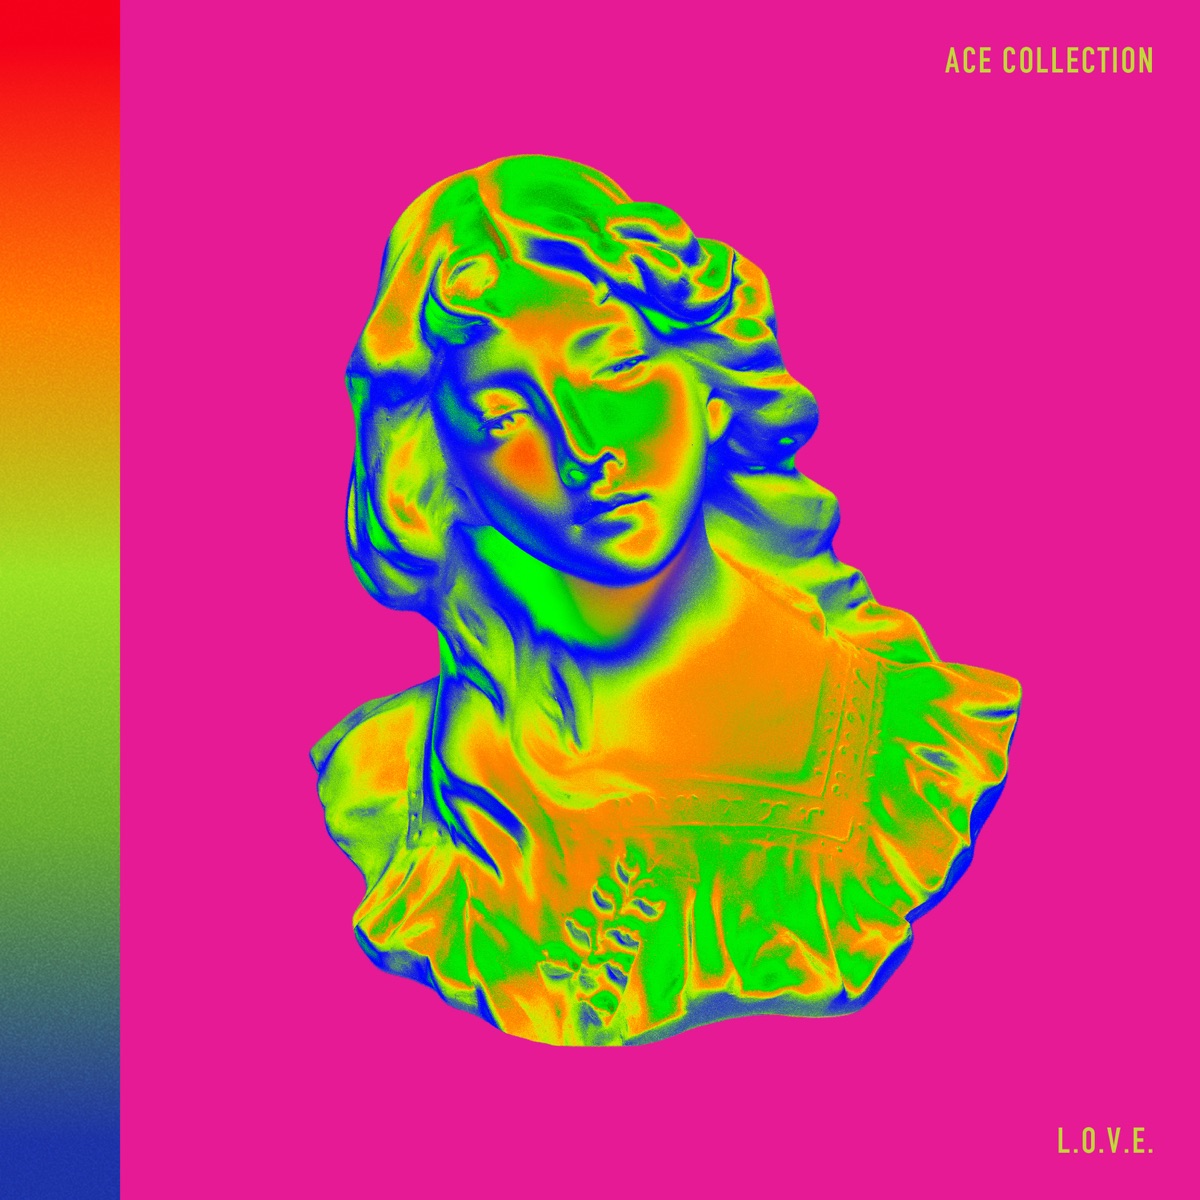 『ACE COLLECTION - ワインレッドのラビリンス』収録の『L.O.V.E.』ジャケット